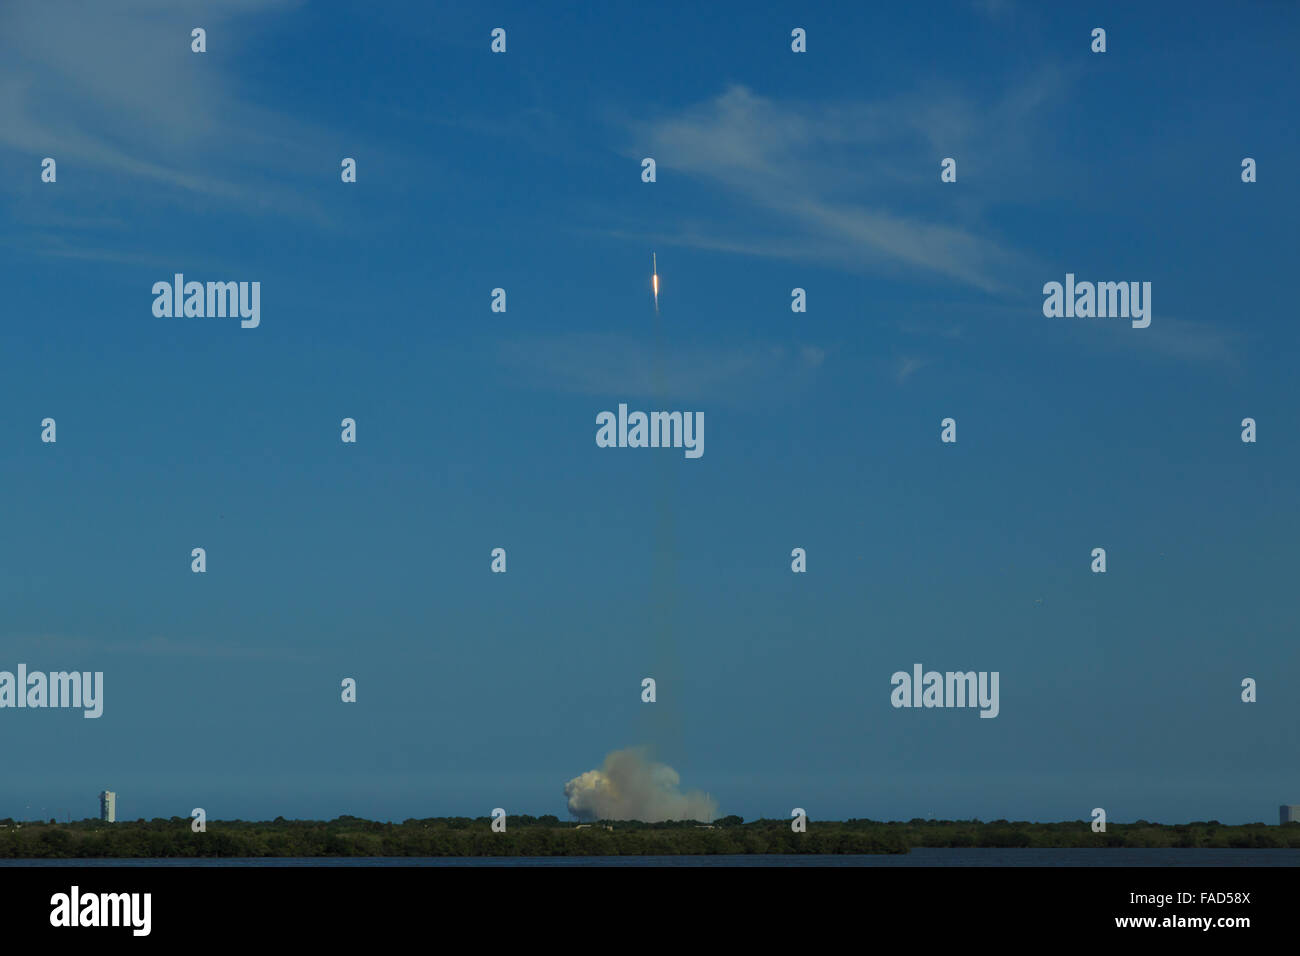 Una fotografía de lanzamiento de un cohete SpaceX Falcon 9 desde Cabo Cañaveral en Florida, Estados Unidos. Foto de stock